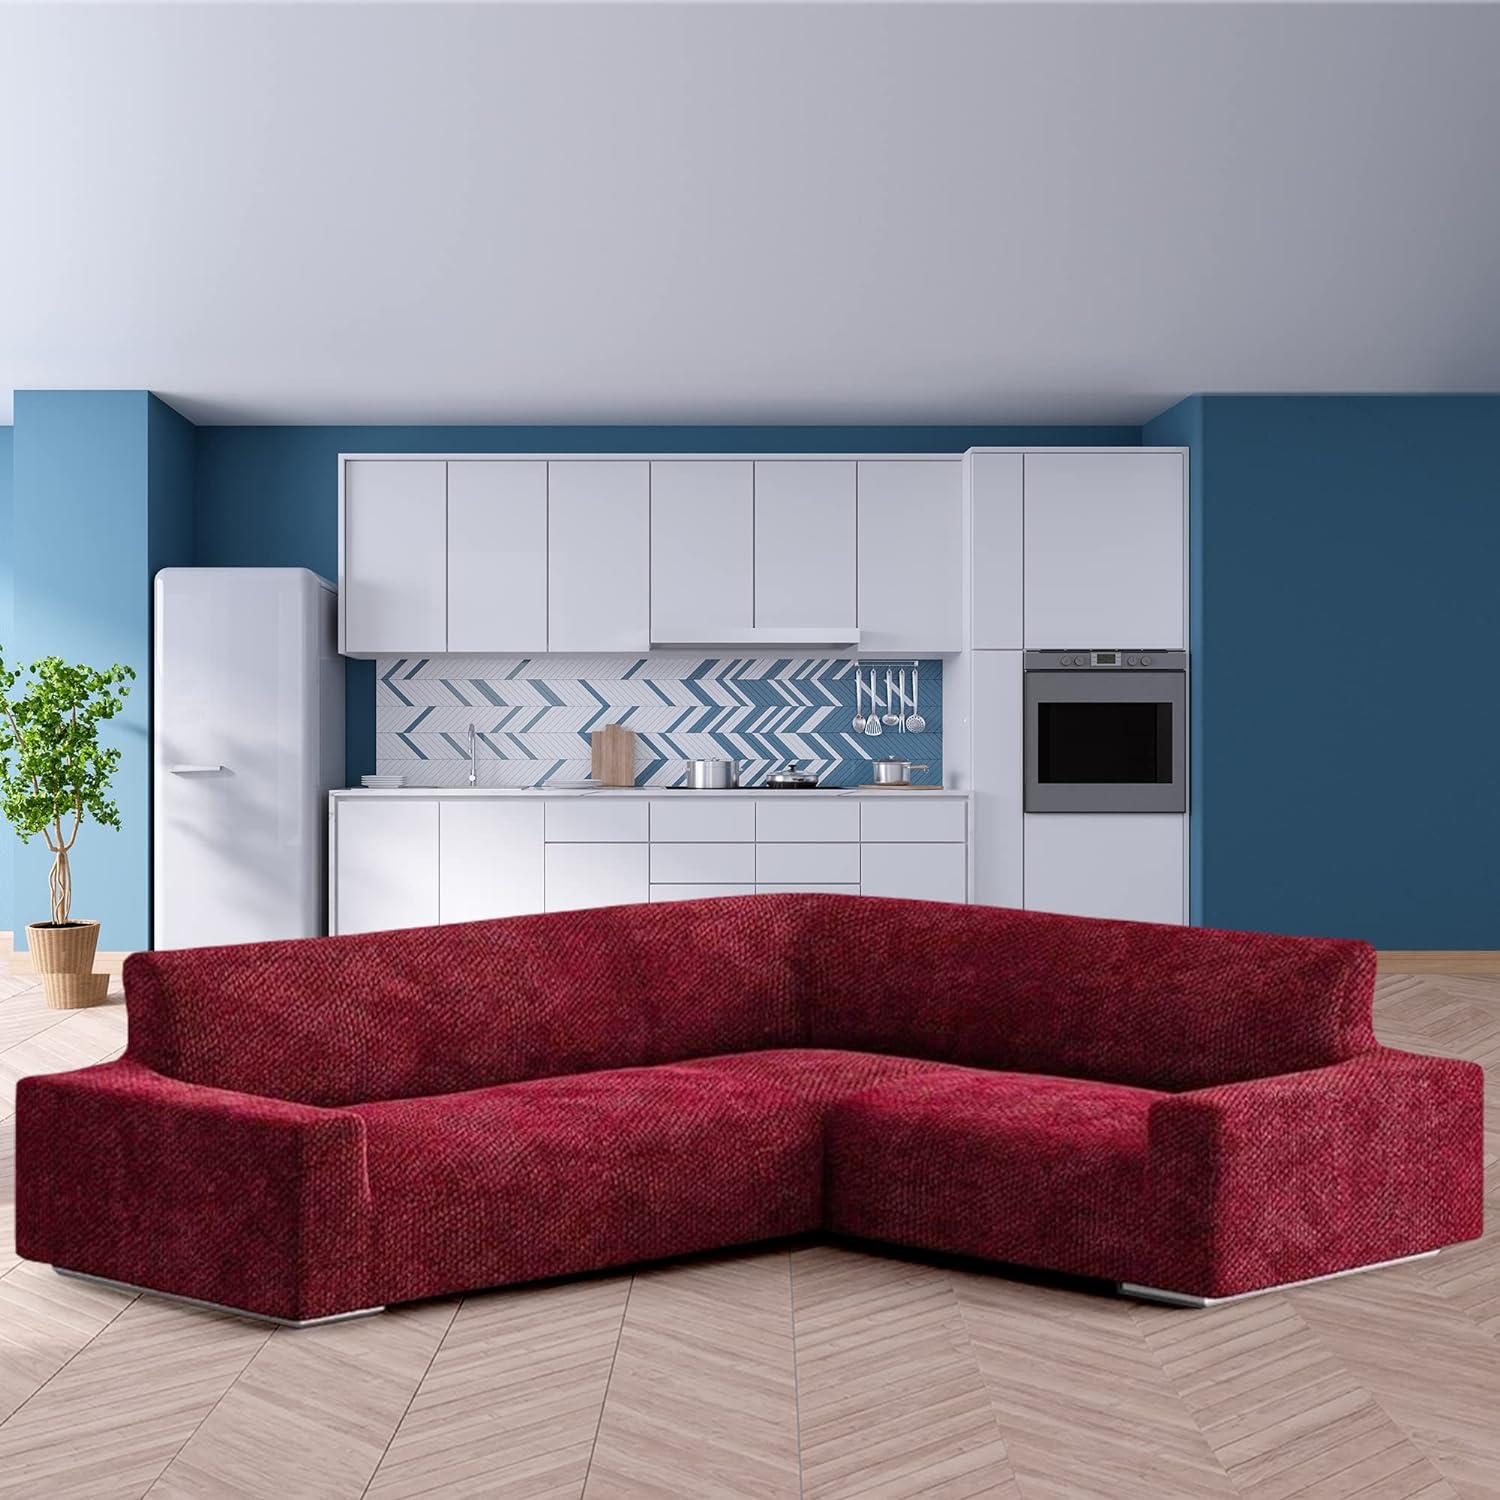 Italianate Modern Elastic Stretch Burgundy Velvet Sofa Cover